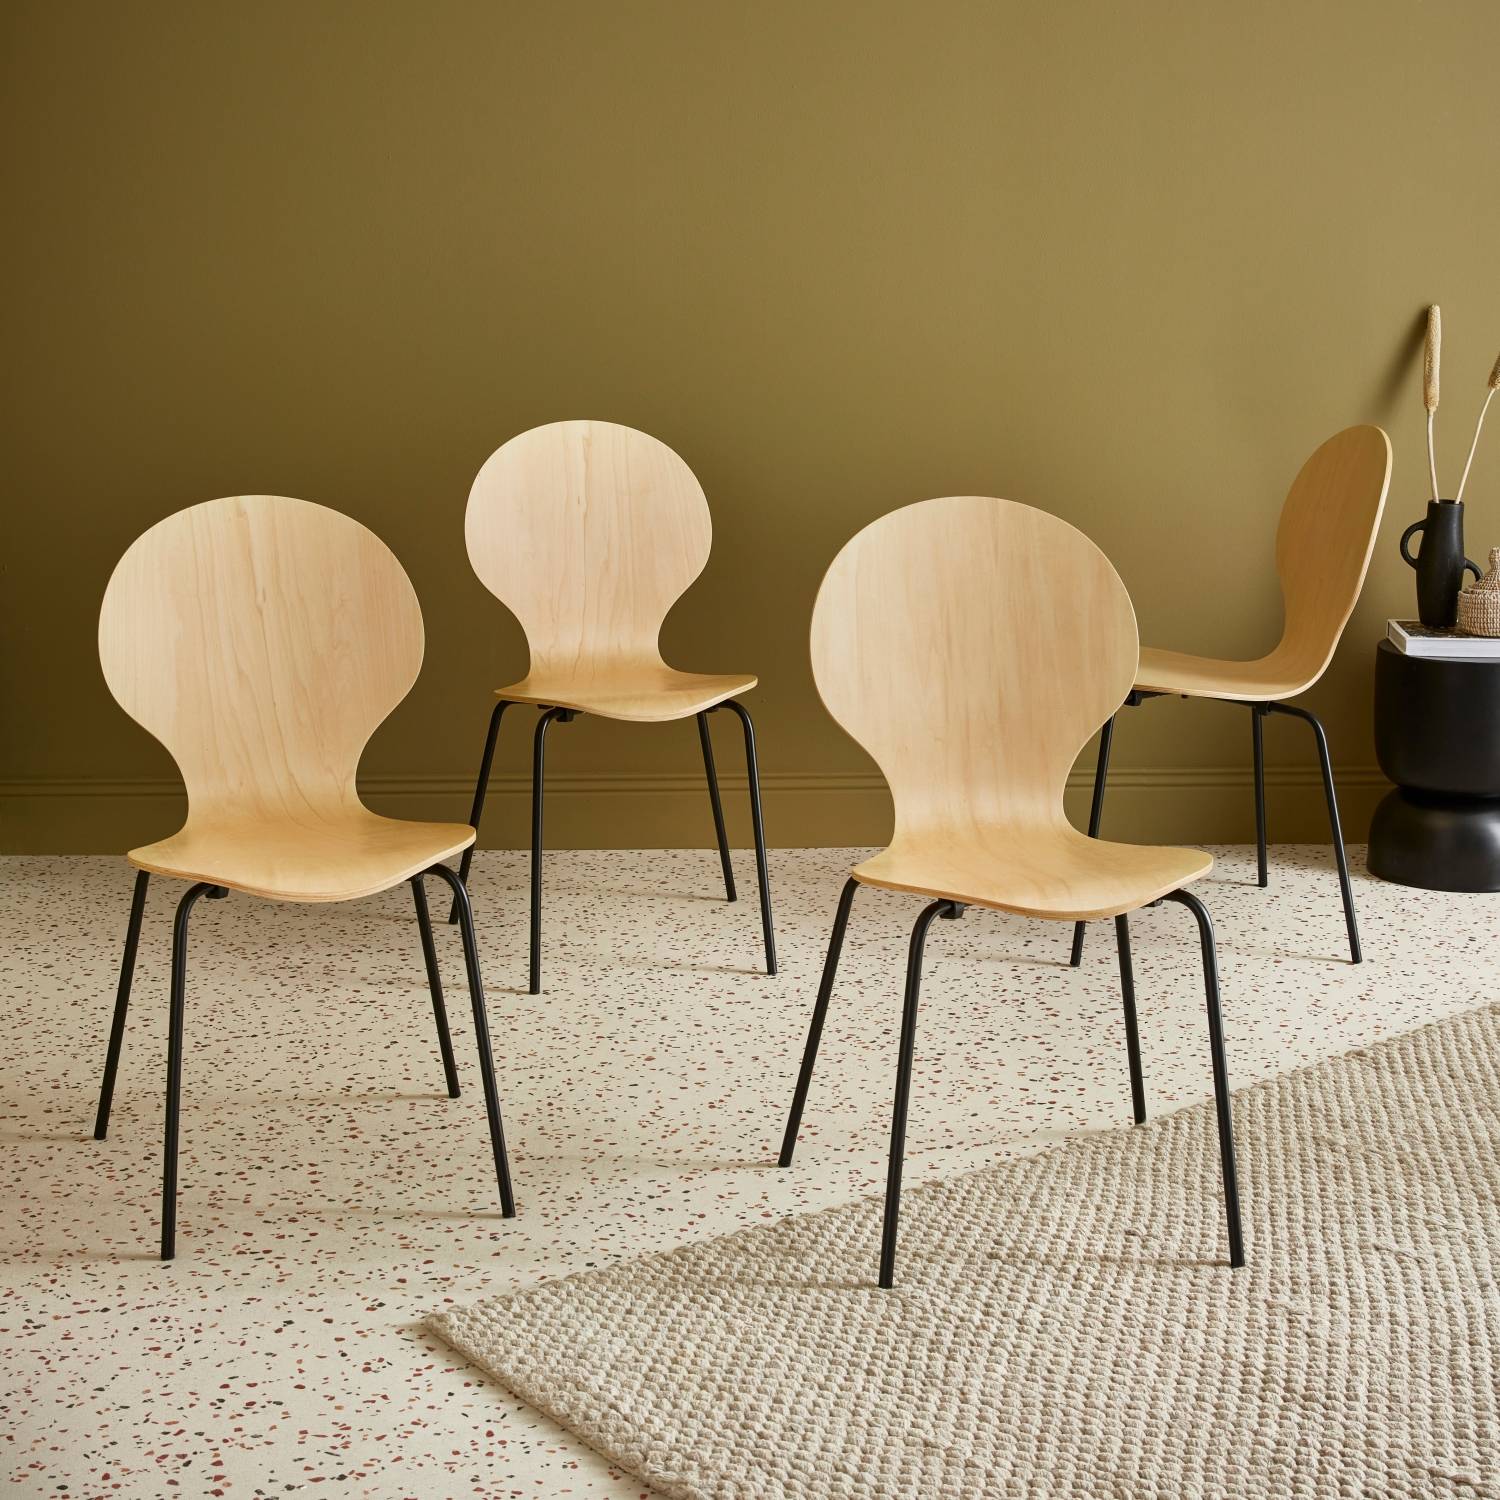 Conjunto de 4 cadeiras empilháveis retro naturais | sweeek